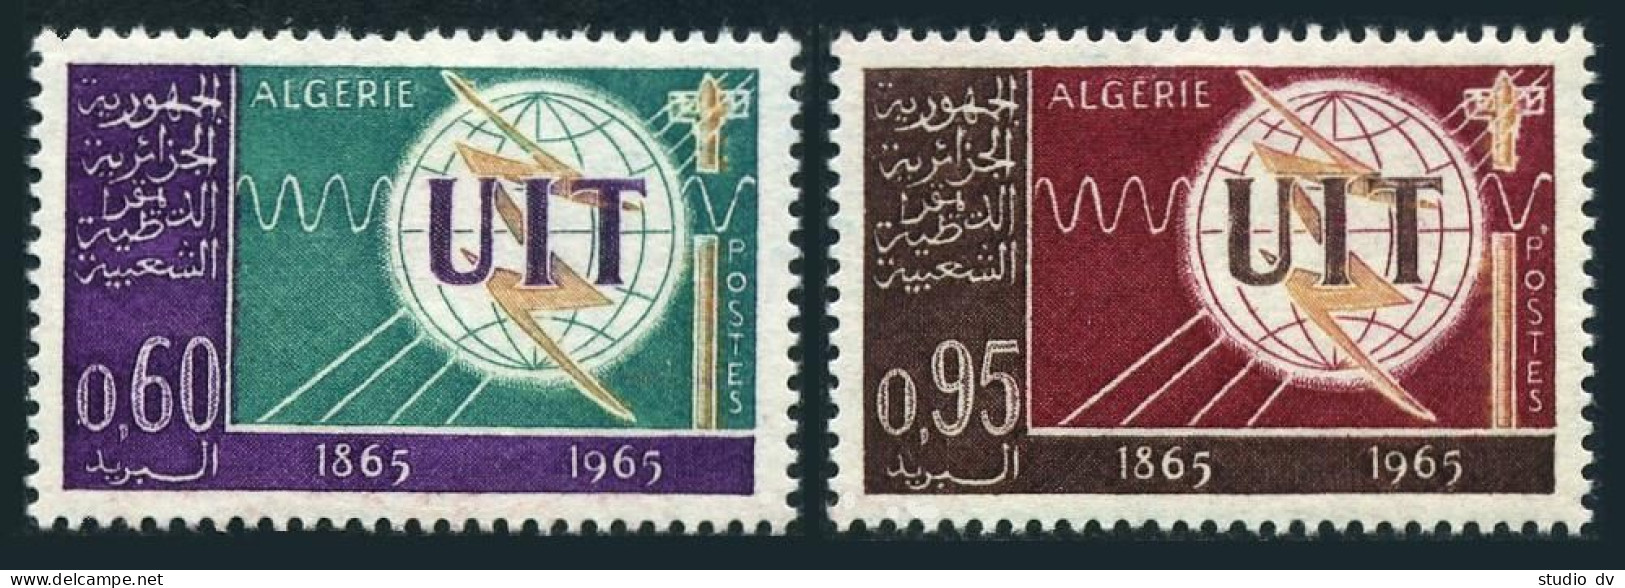 Algeria 339-340, MNH. Michel 439-440. ITU-100, 1965. Emblem. - Algerije (1962-...)